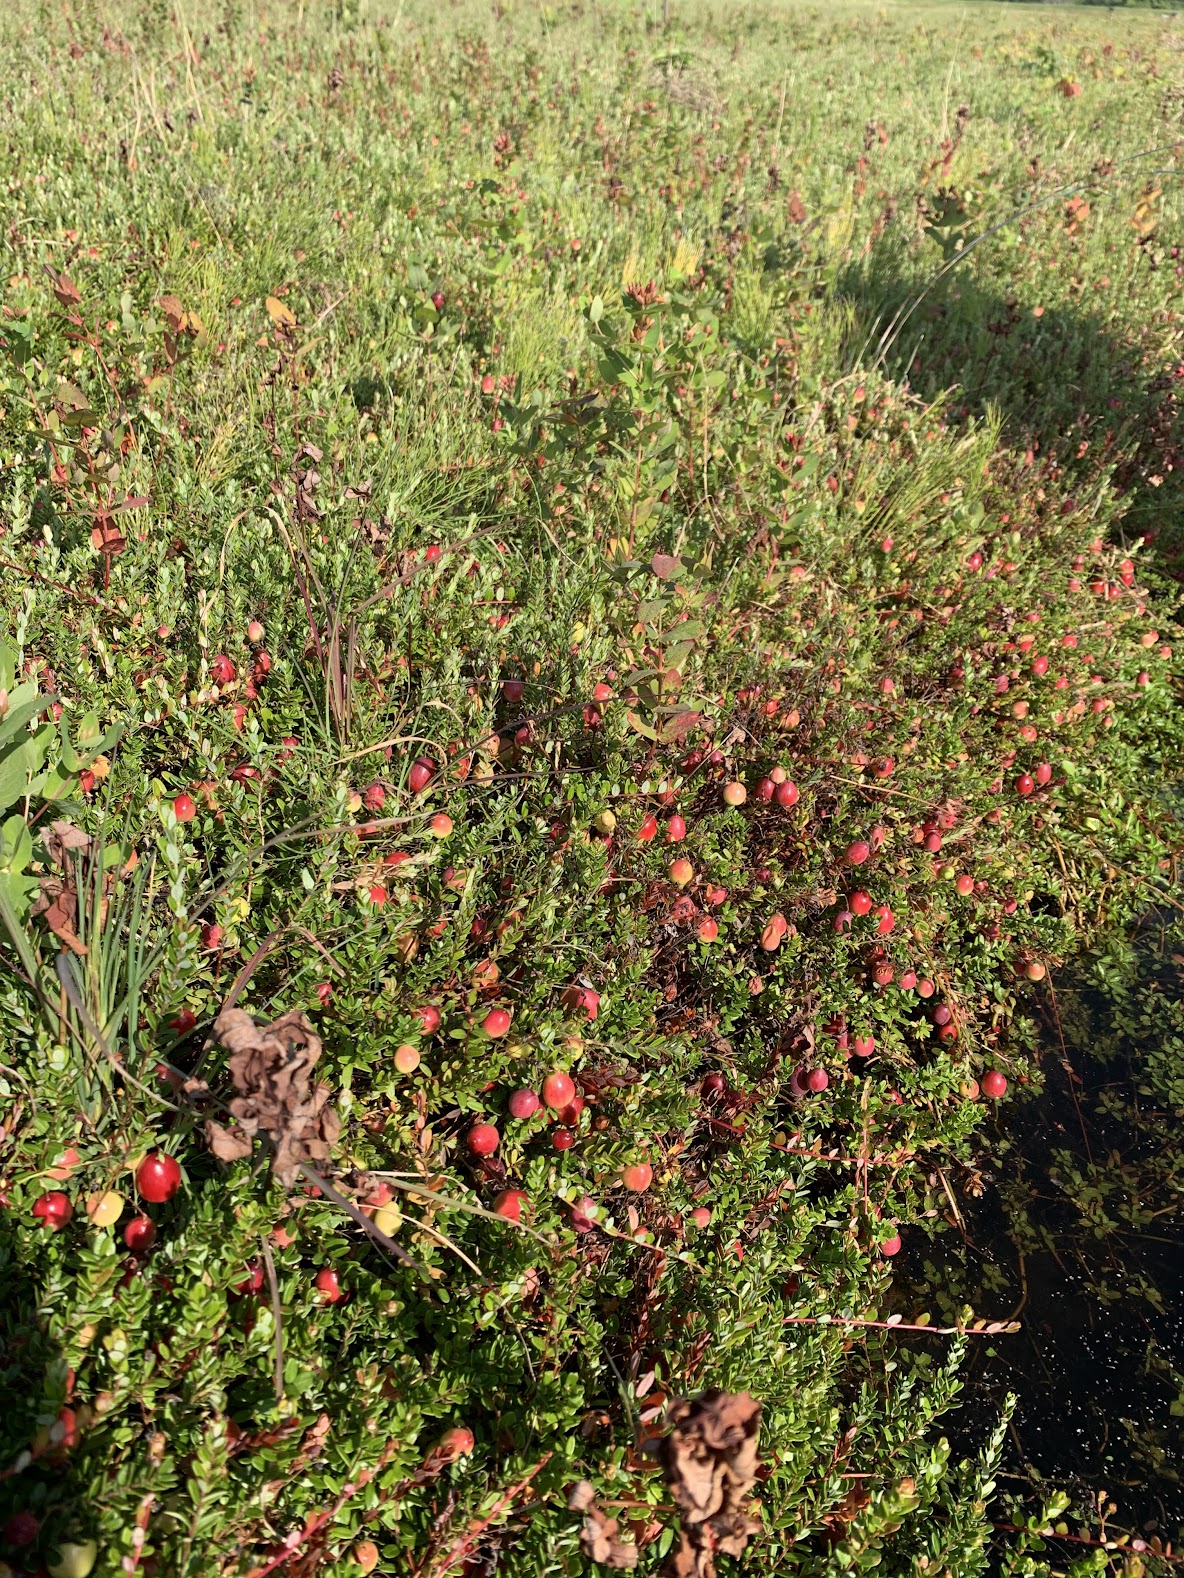 A closeup of a cranberry bush.